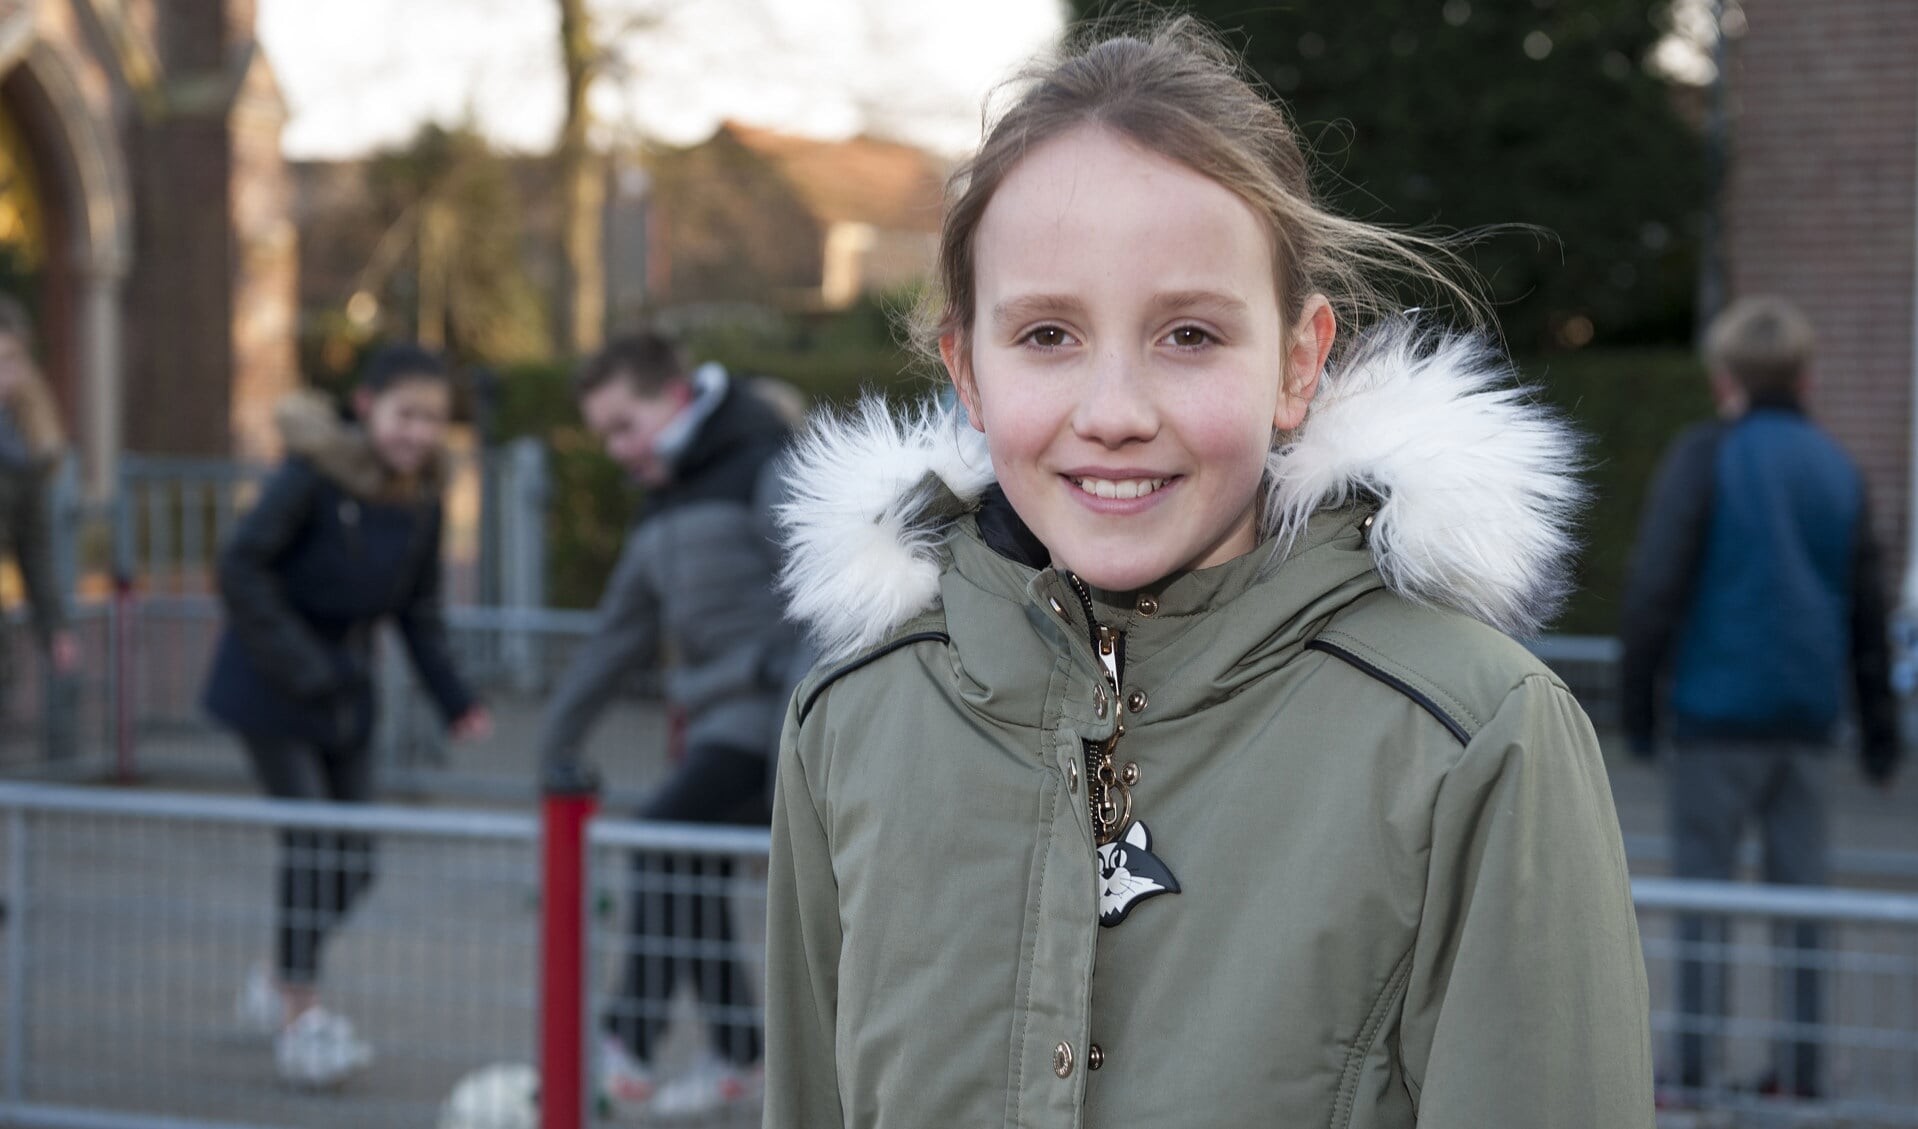 Lara bij het schoolplein van haar school De Linge in Biezelinge. FOTO JAN-KEES DE MEESTER